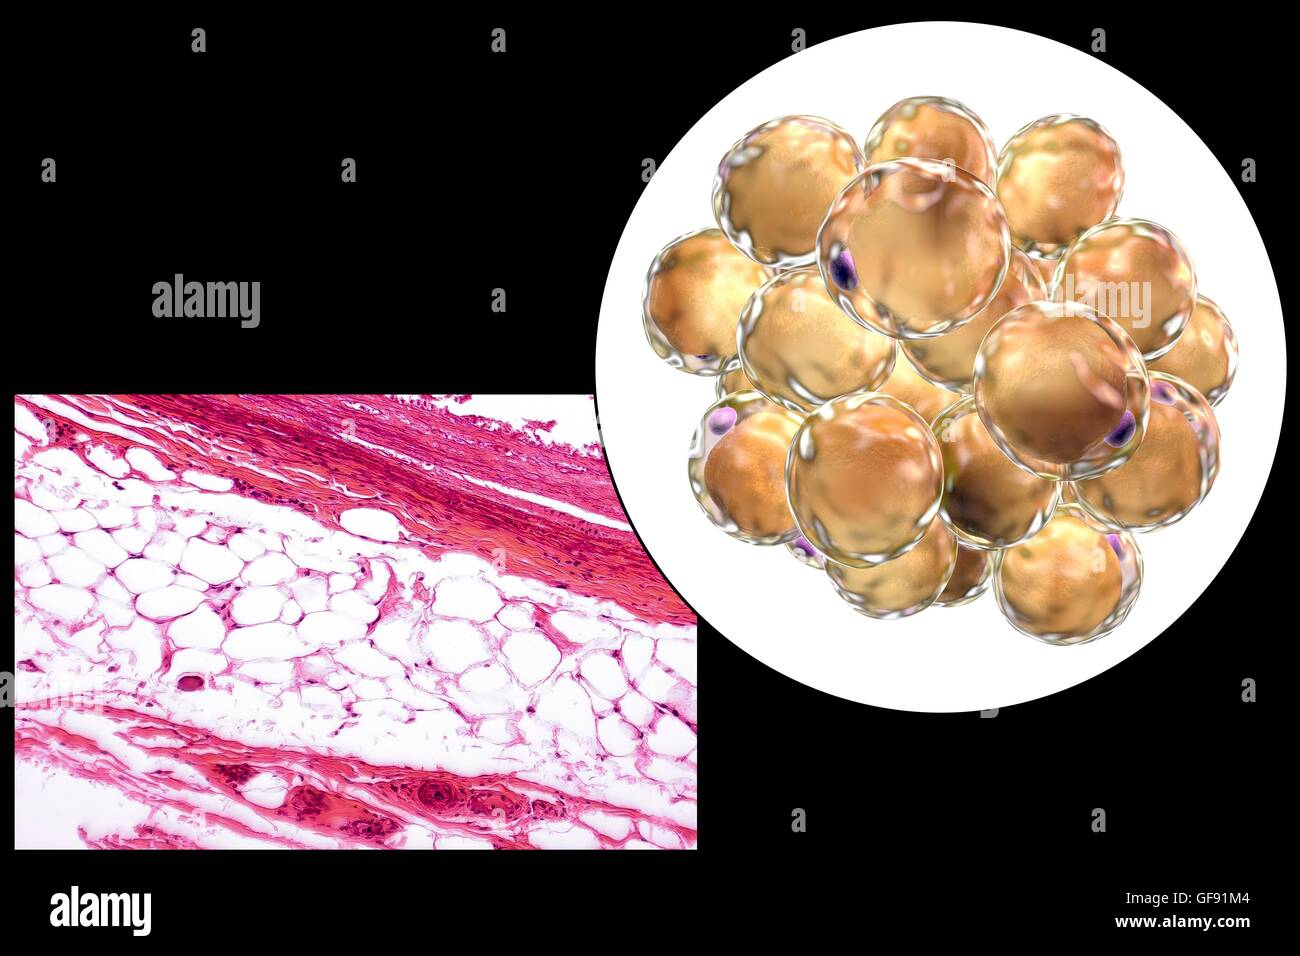 Les cellules adipeuses, lumière microphotographie et illustration de  l'ordinateur. Le tissu adipeux blanc composé d'adipocytes (cellules  graisseuses). Forme les adipocytes du tissu adipeux, qui stocke l'énergie  comme une couche isolante de graisse.